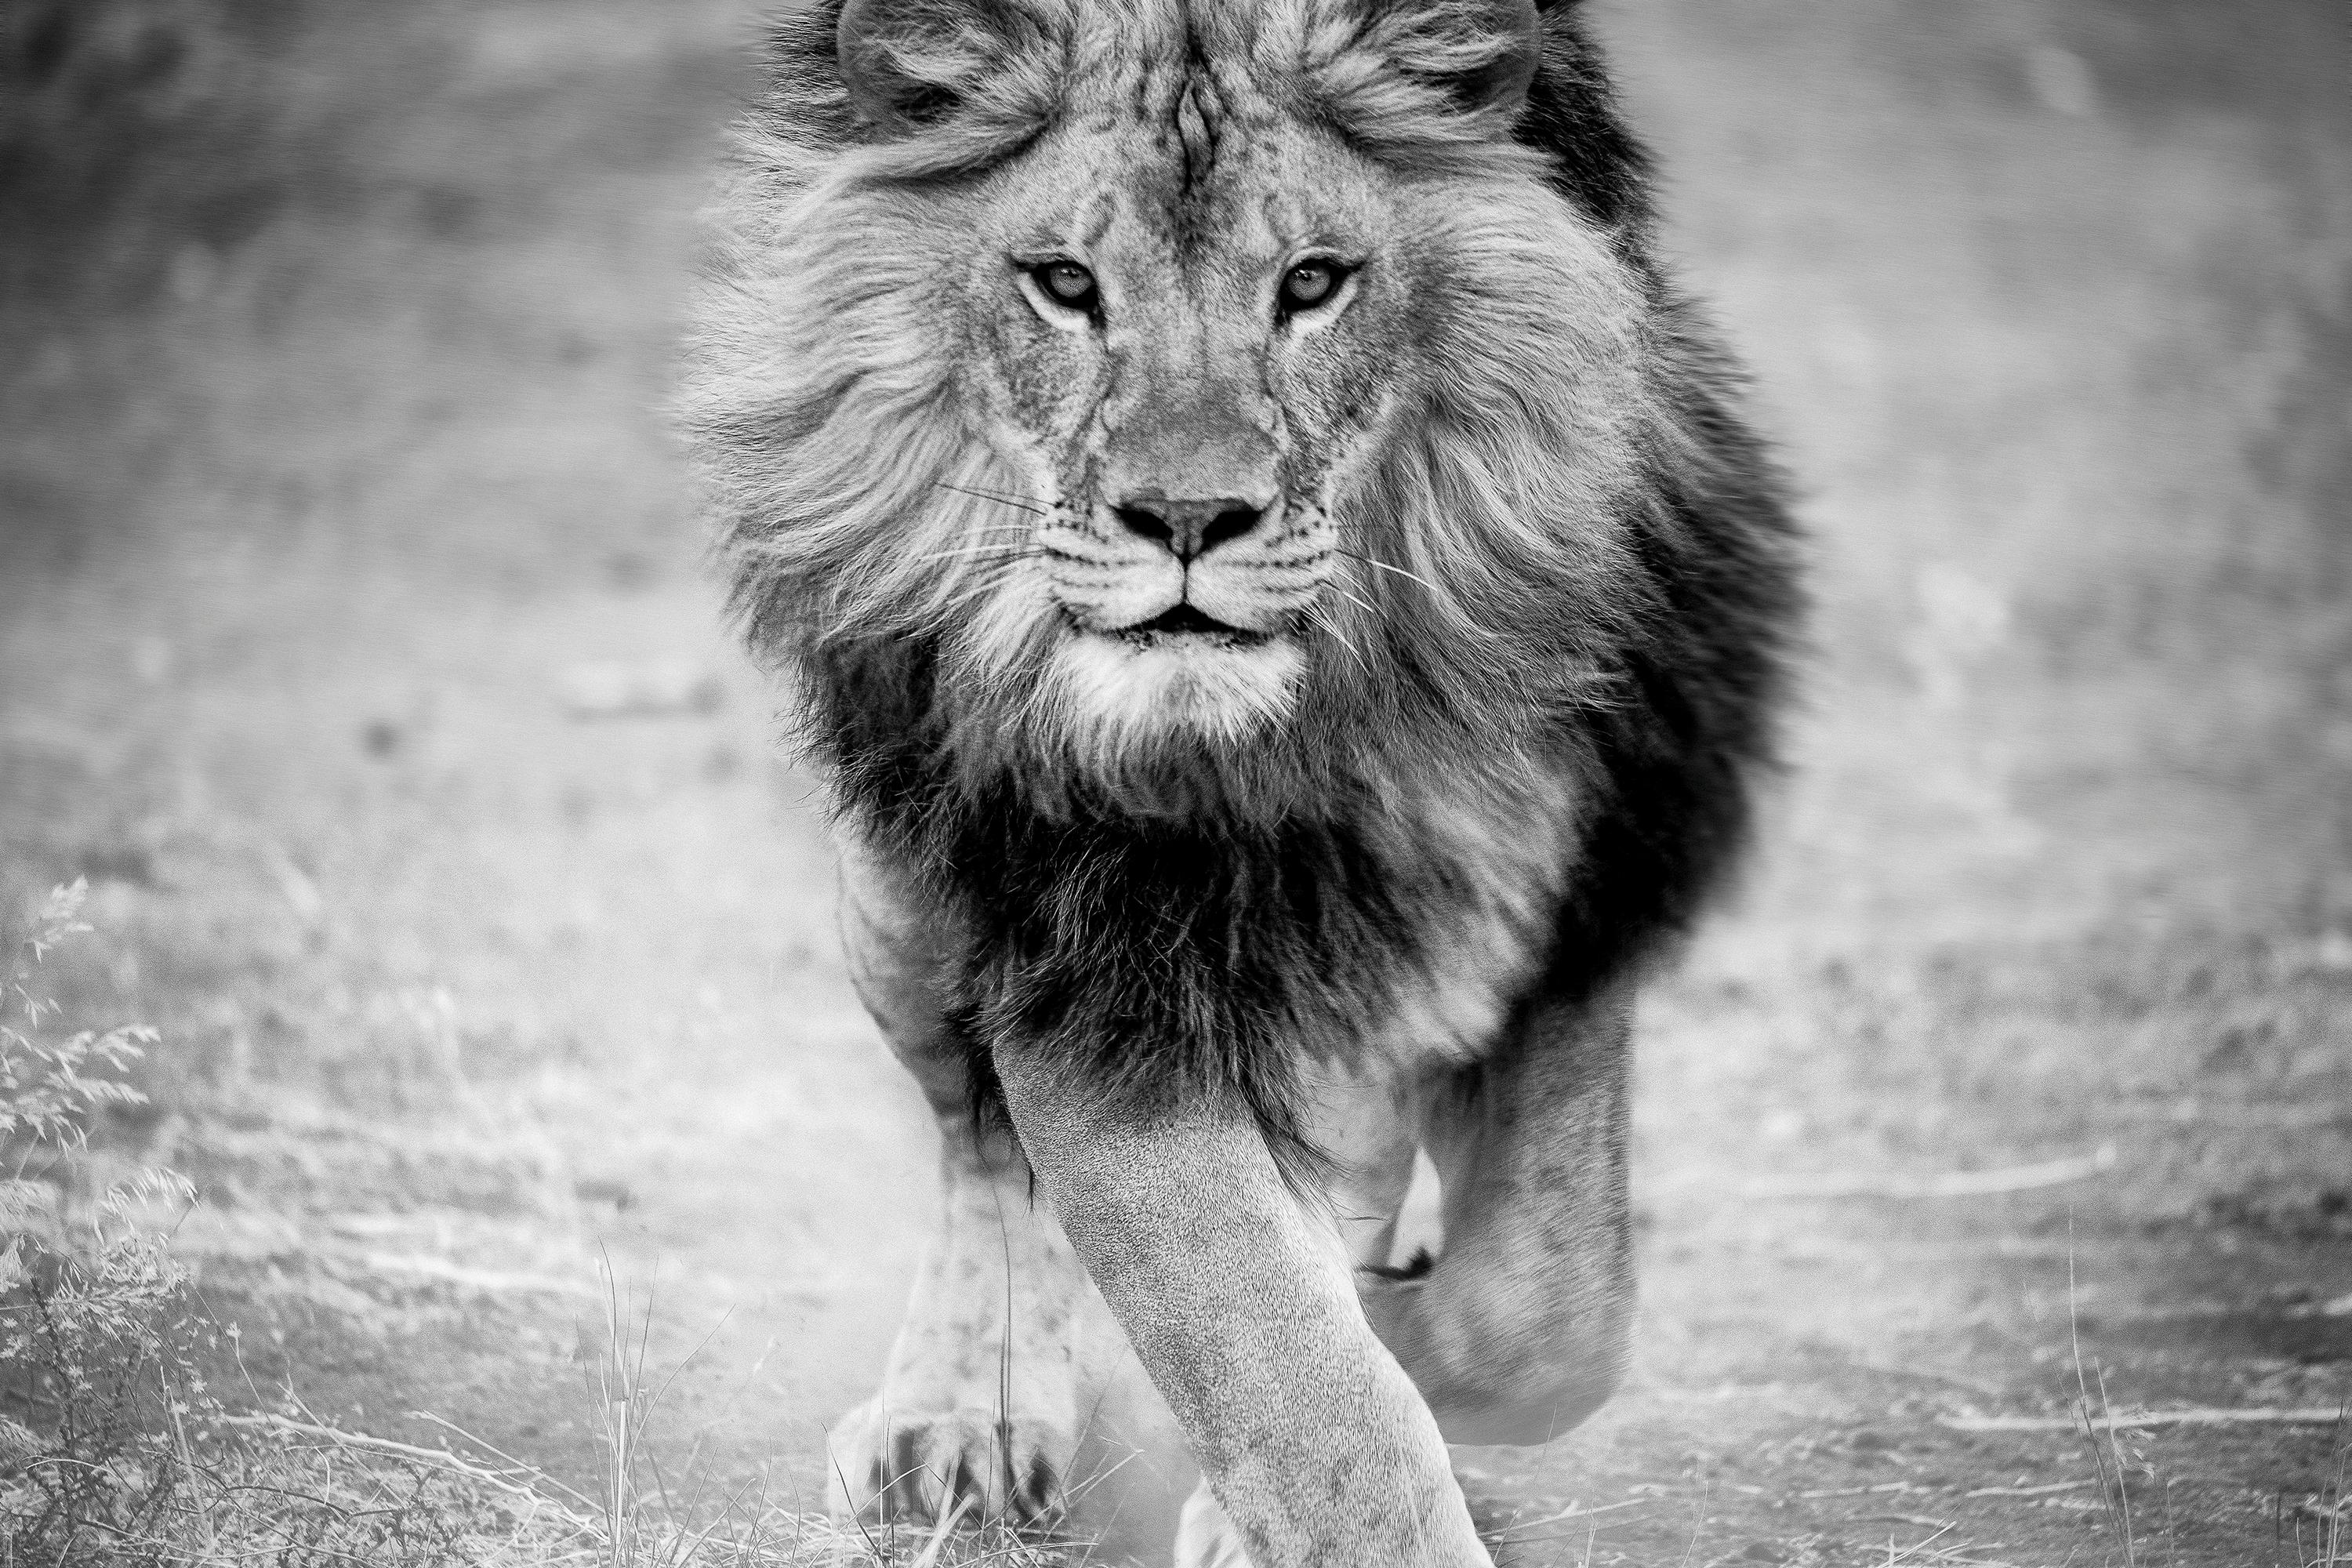 Black and White Photograph Shane Russeck - Panthera Leo 30x50 Photographie en noir et blanc, photographie de lion, non signée 